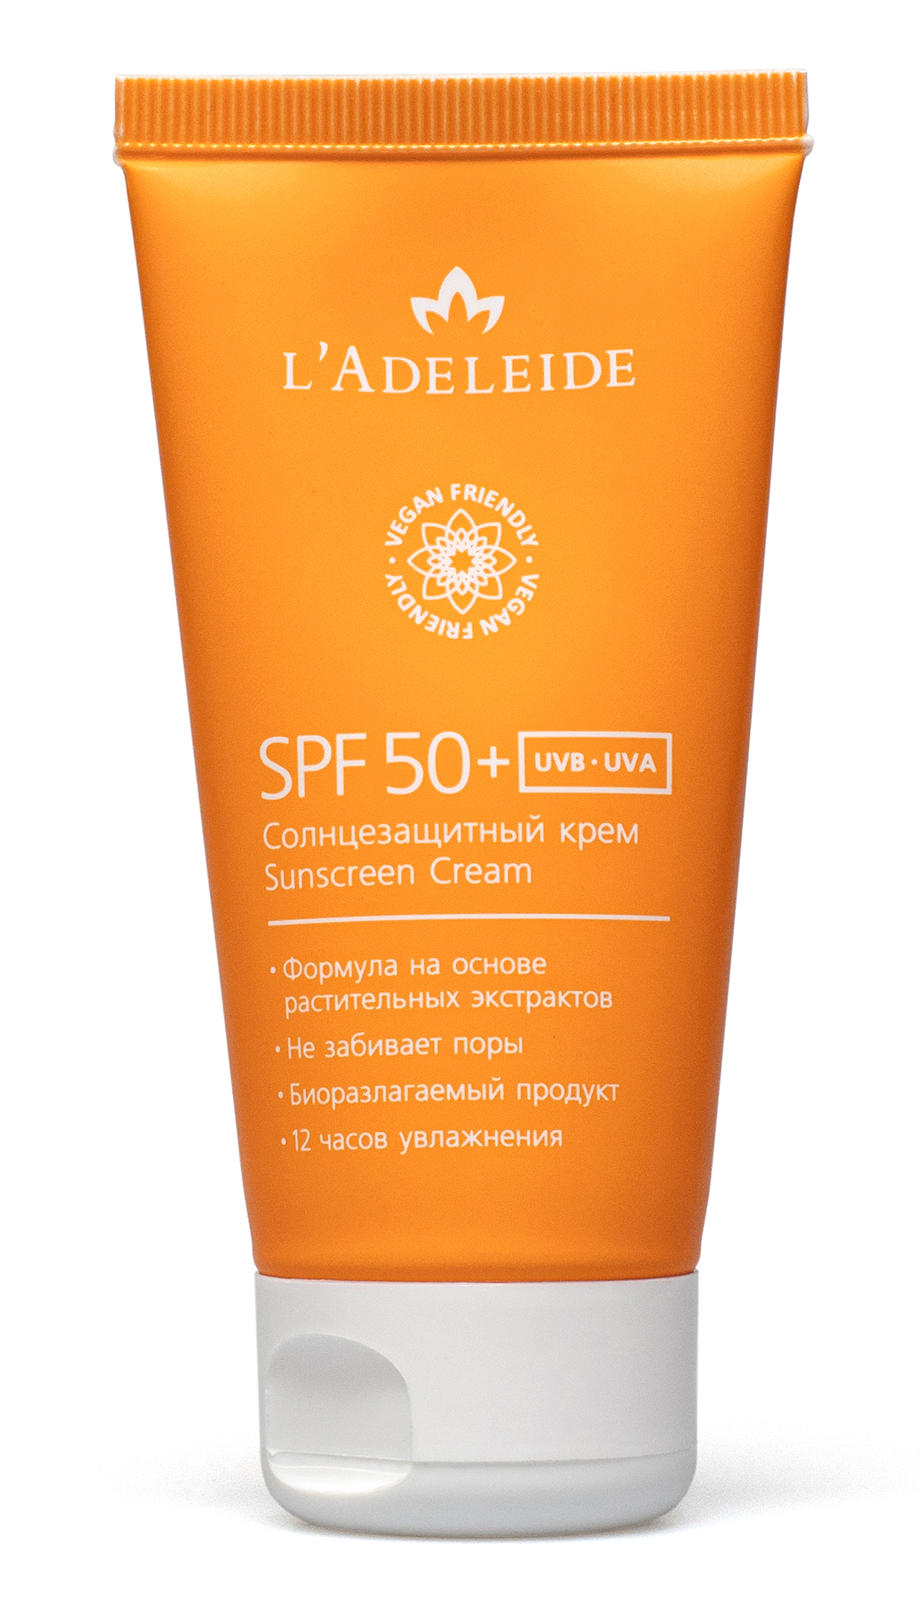 Купить Солнцезащитный крем L'Adeleide SPF 50+